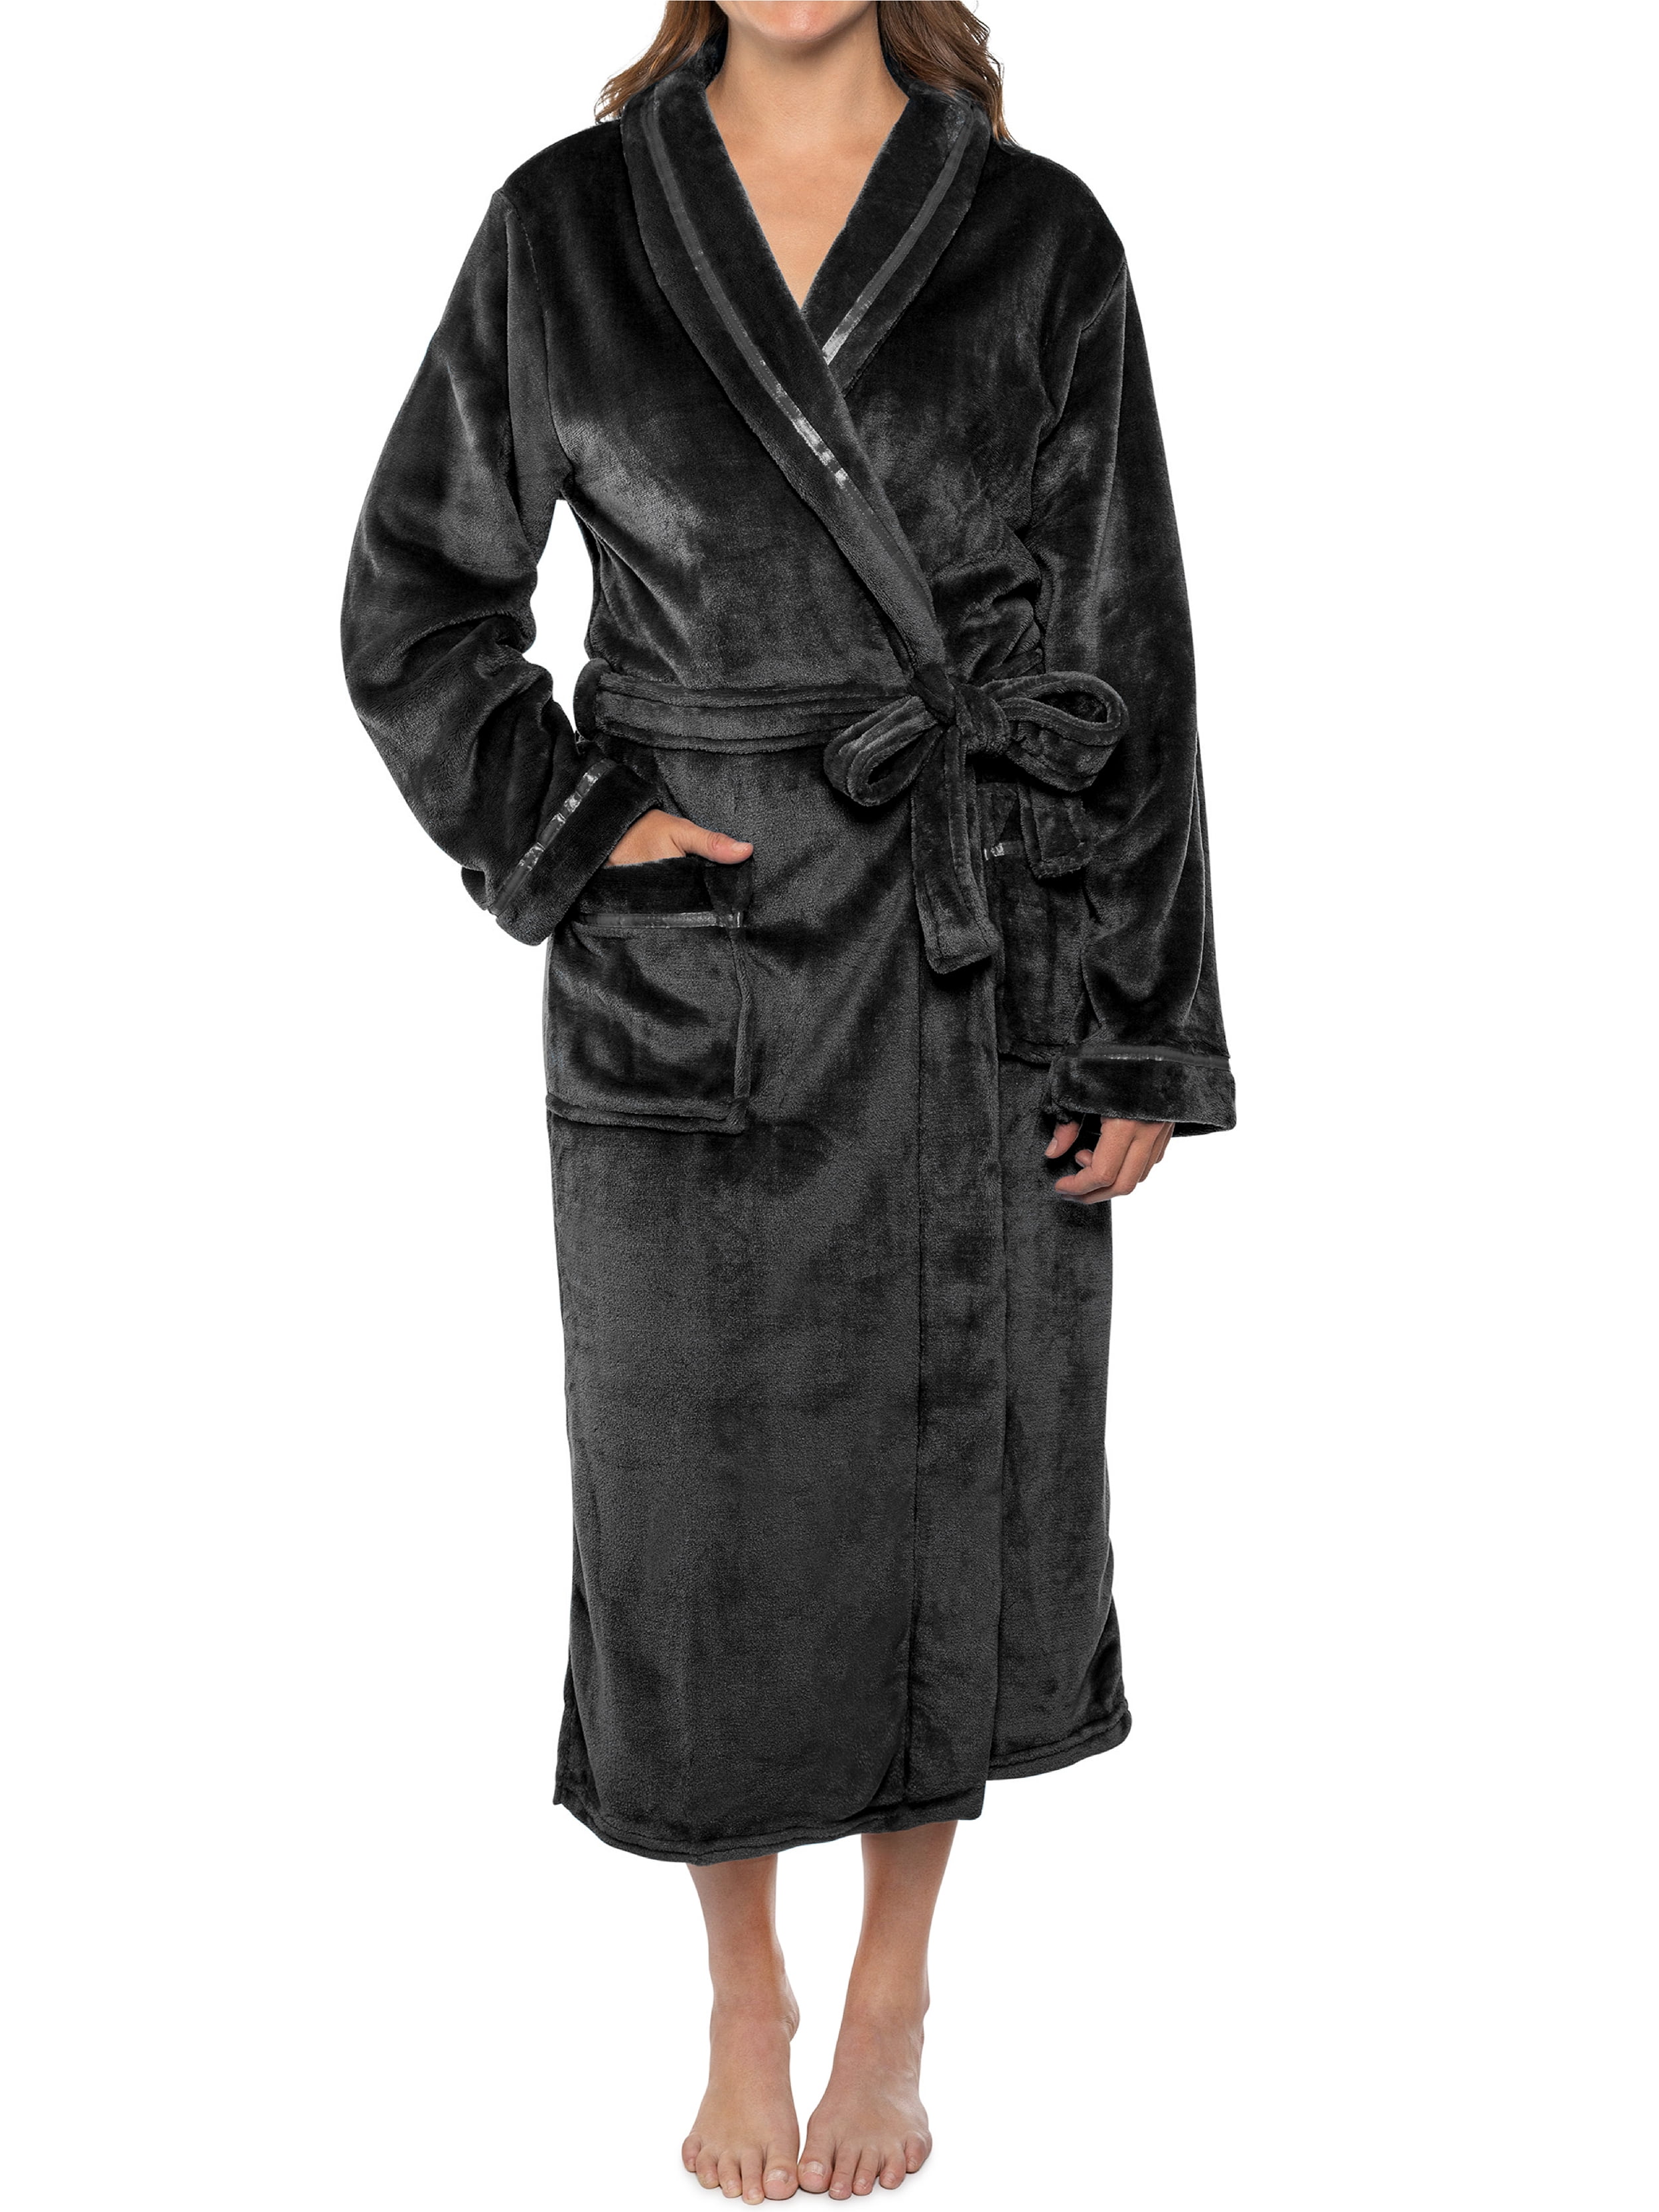 PAVILIA Plush Robe For Women, Black Fluffy Soft Bathrobe, Lightweight ...